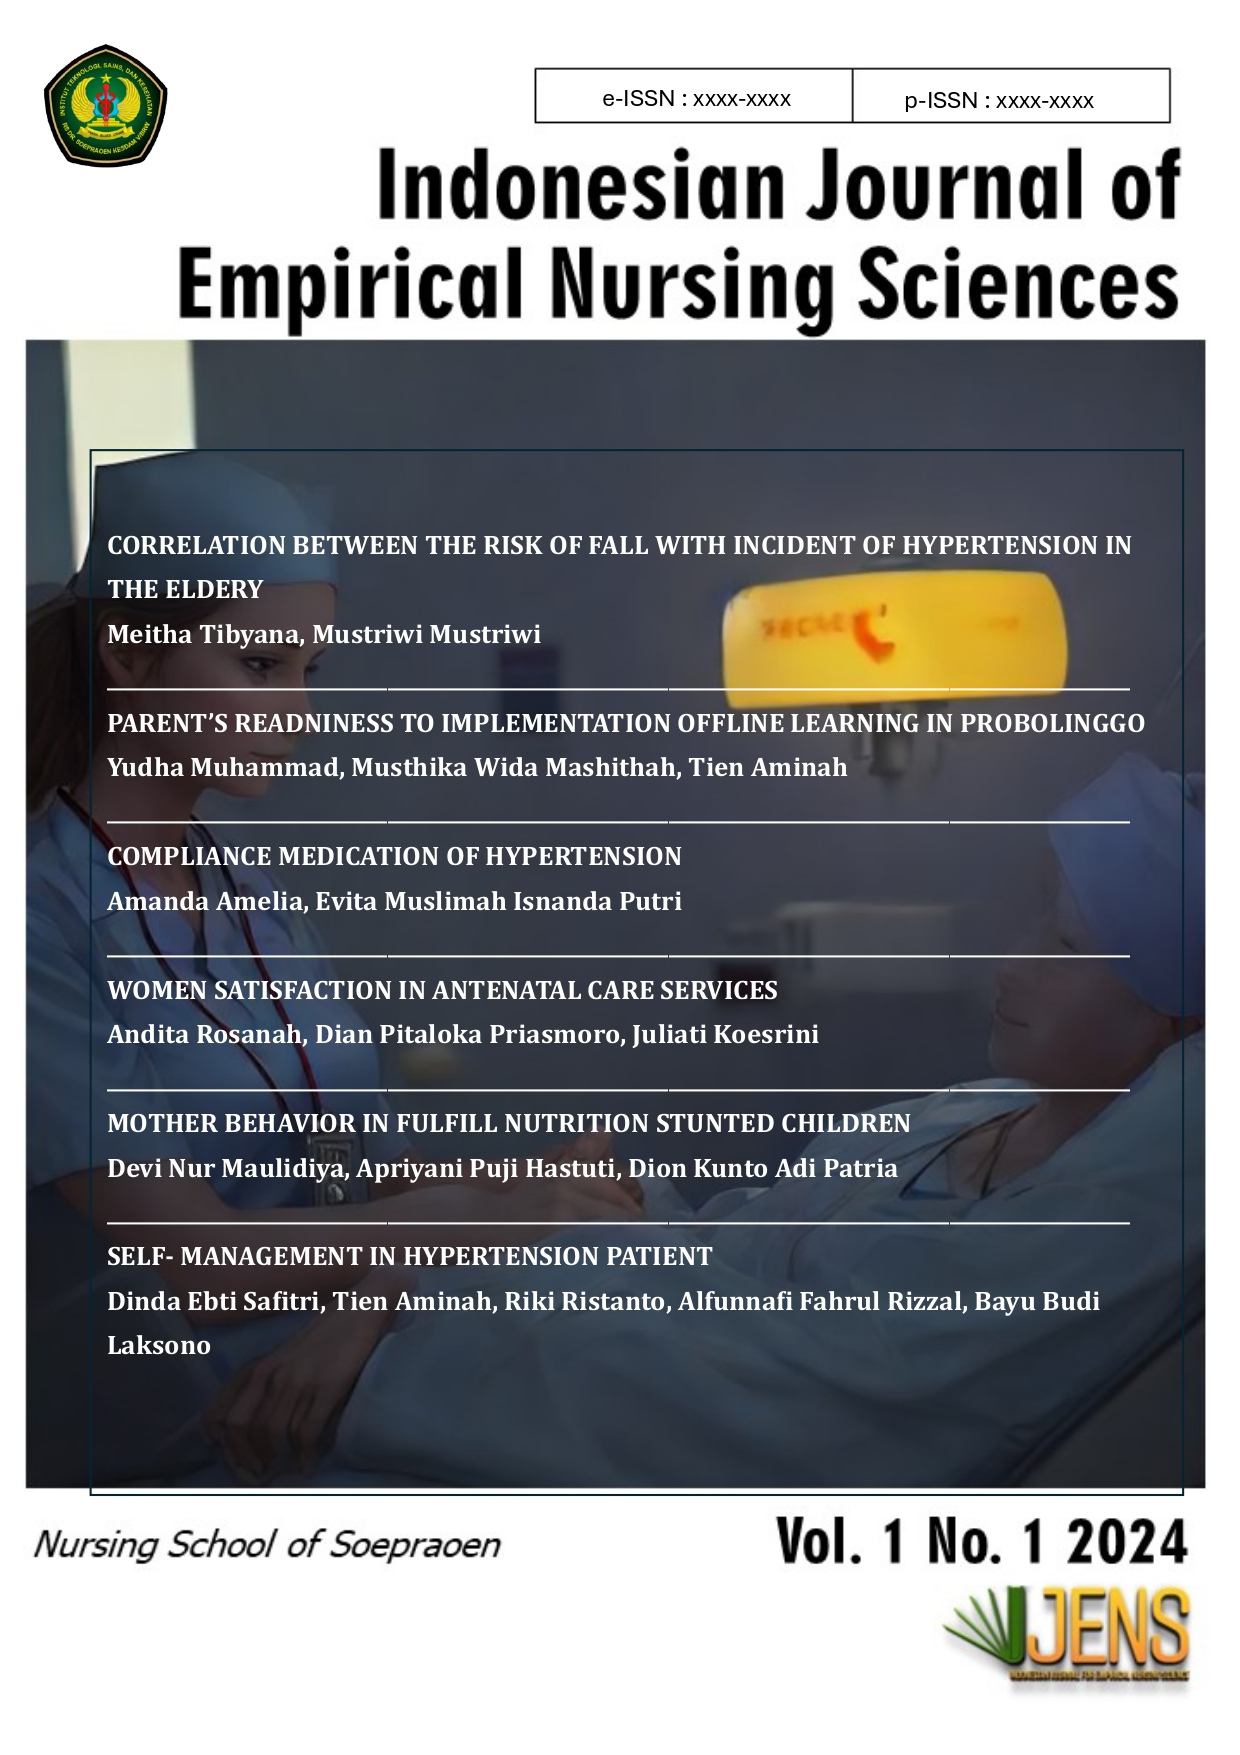 Indonesian Journal of Empirical Nursing Sciences Vol. 1 No. 1 2024